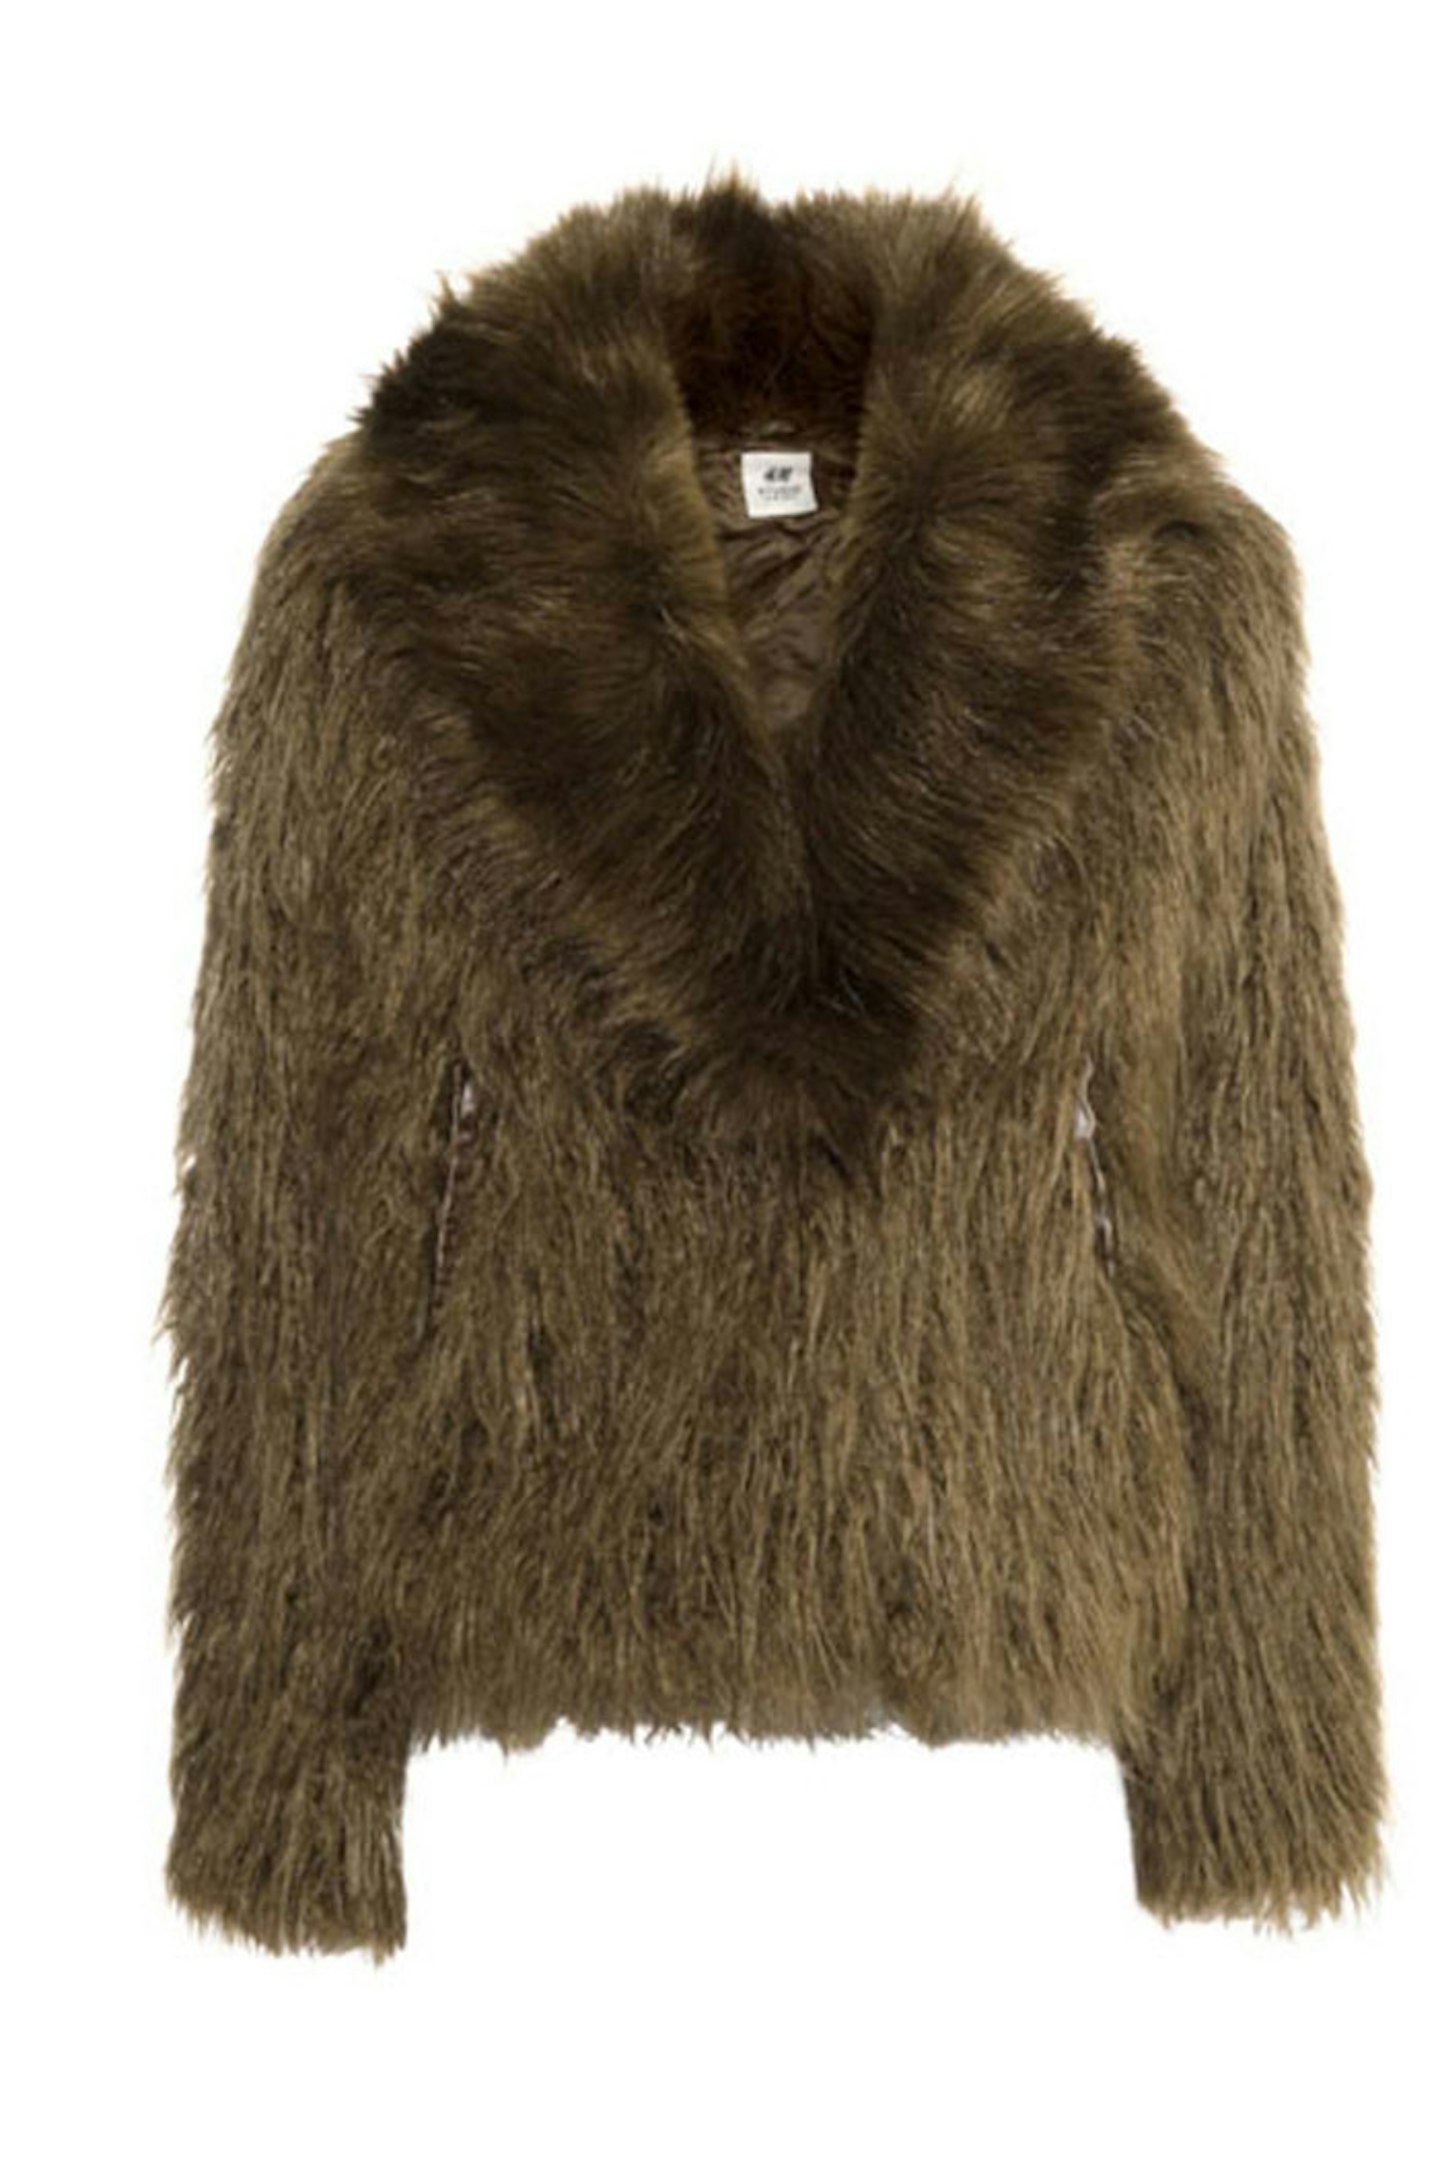 Coat, £59.99, H&M